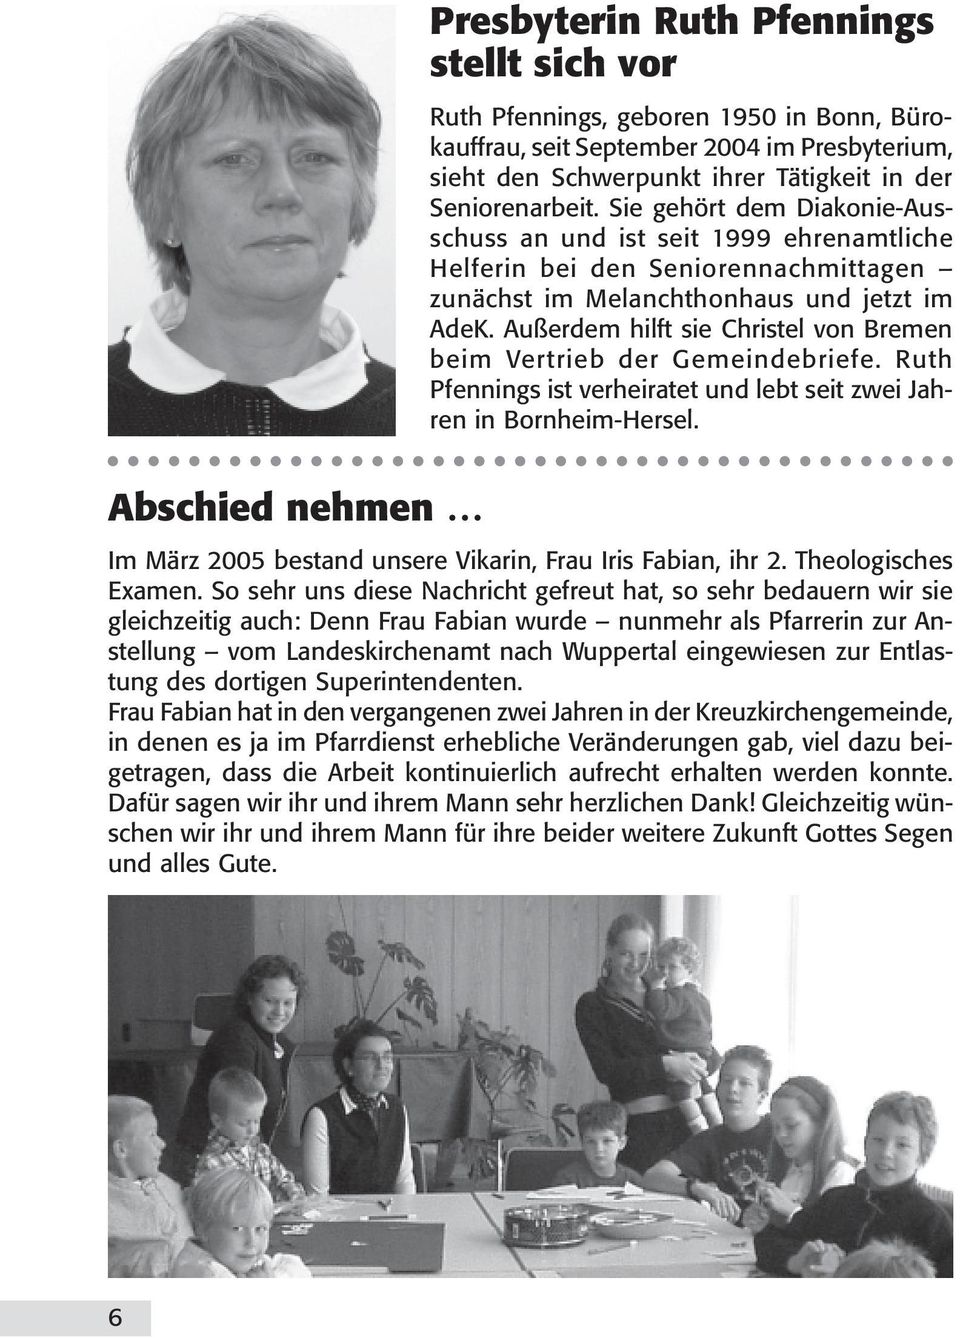 Außerdem hilft sie Christel von Bremen beim Vertrieb der Gemeindebriefe. Ruth Pfennings ist verheiratet und lebt seit zwei Jahren in Bornheim-Hersel.